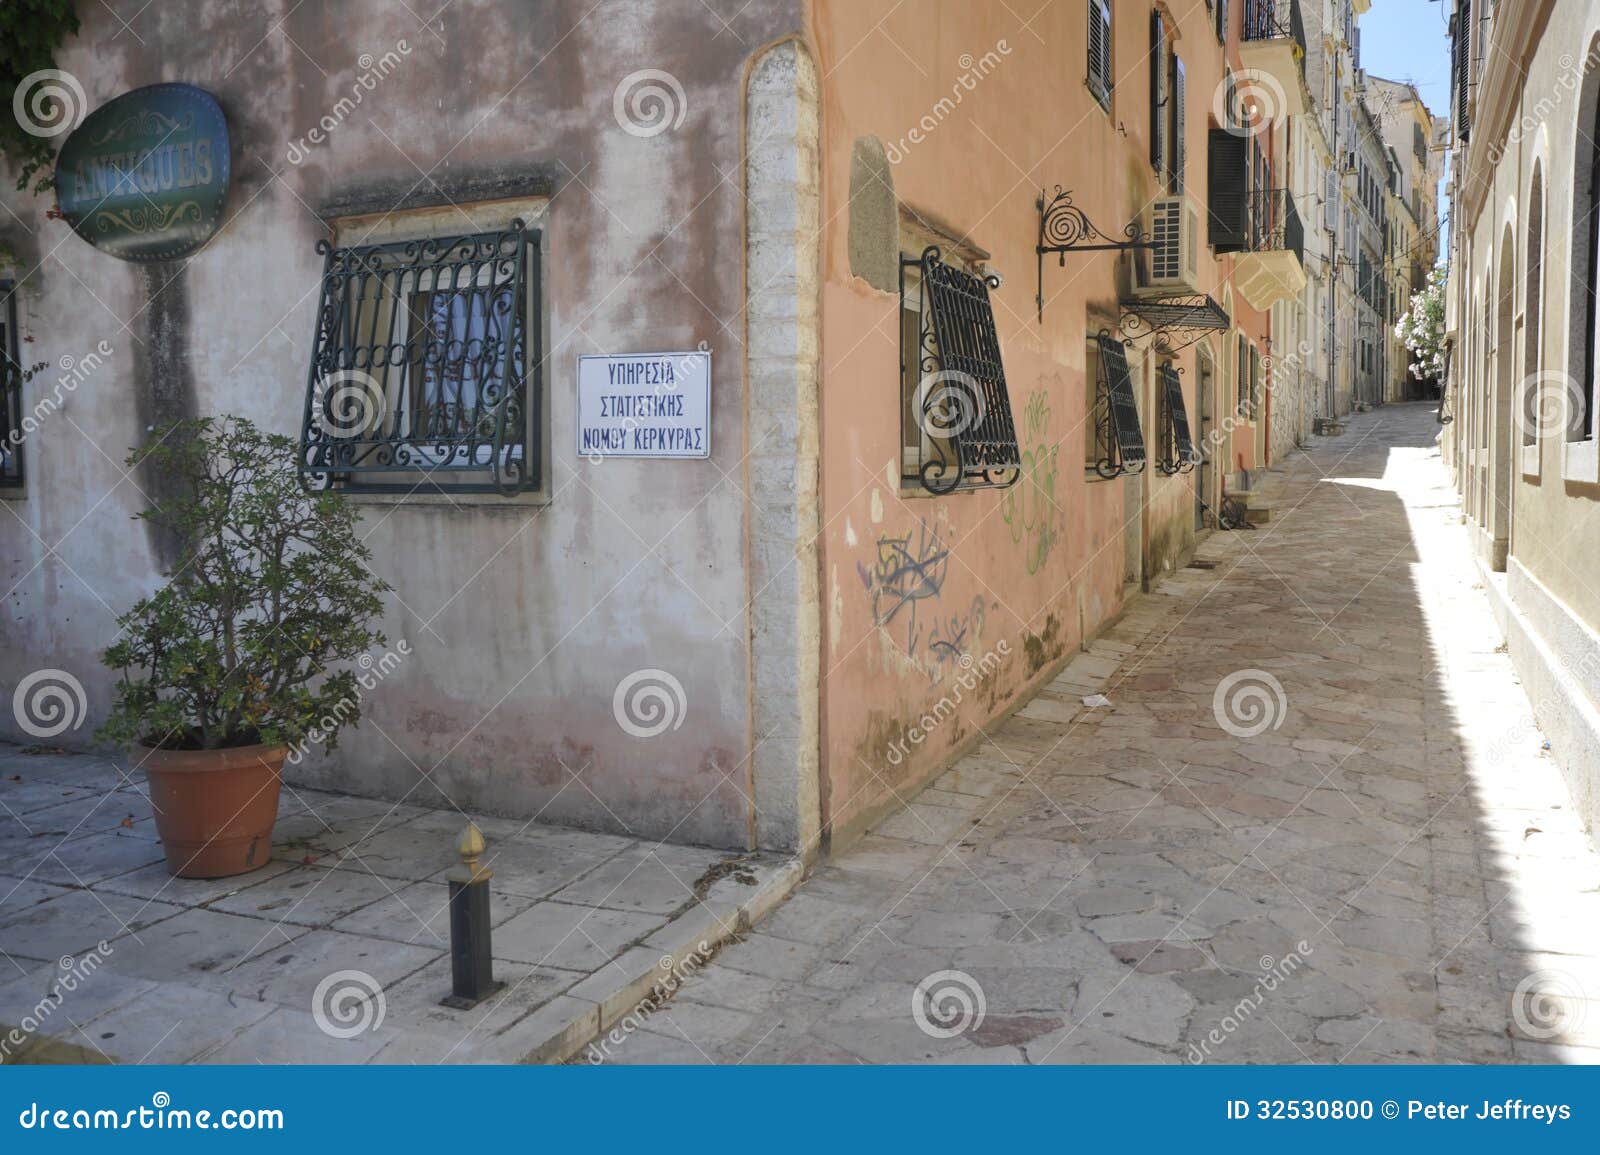 street in corfu